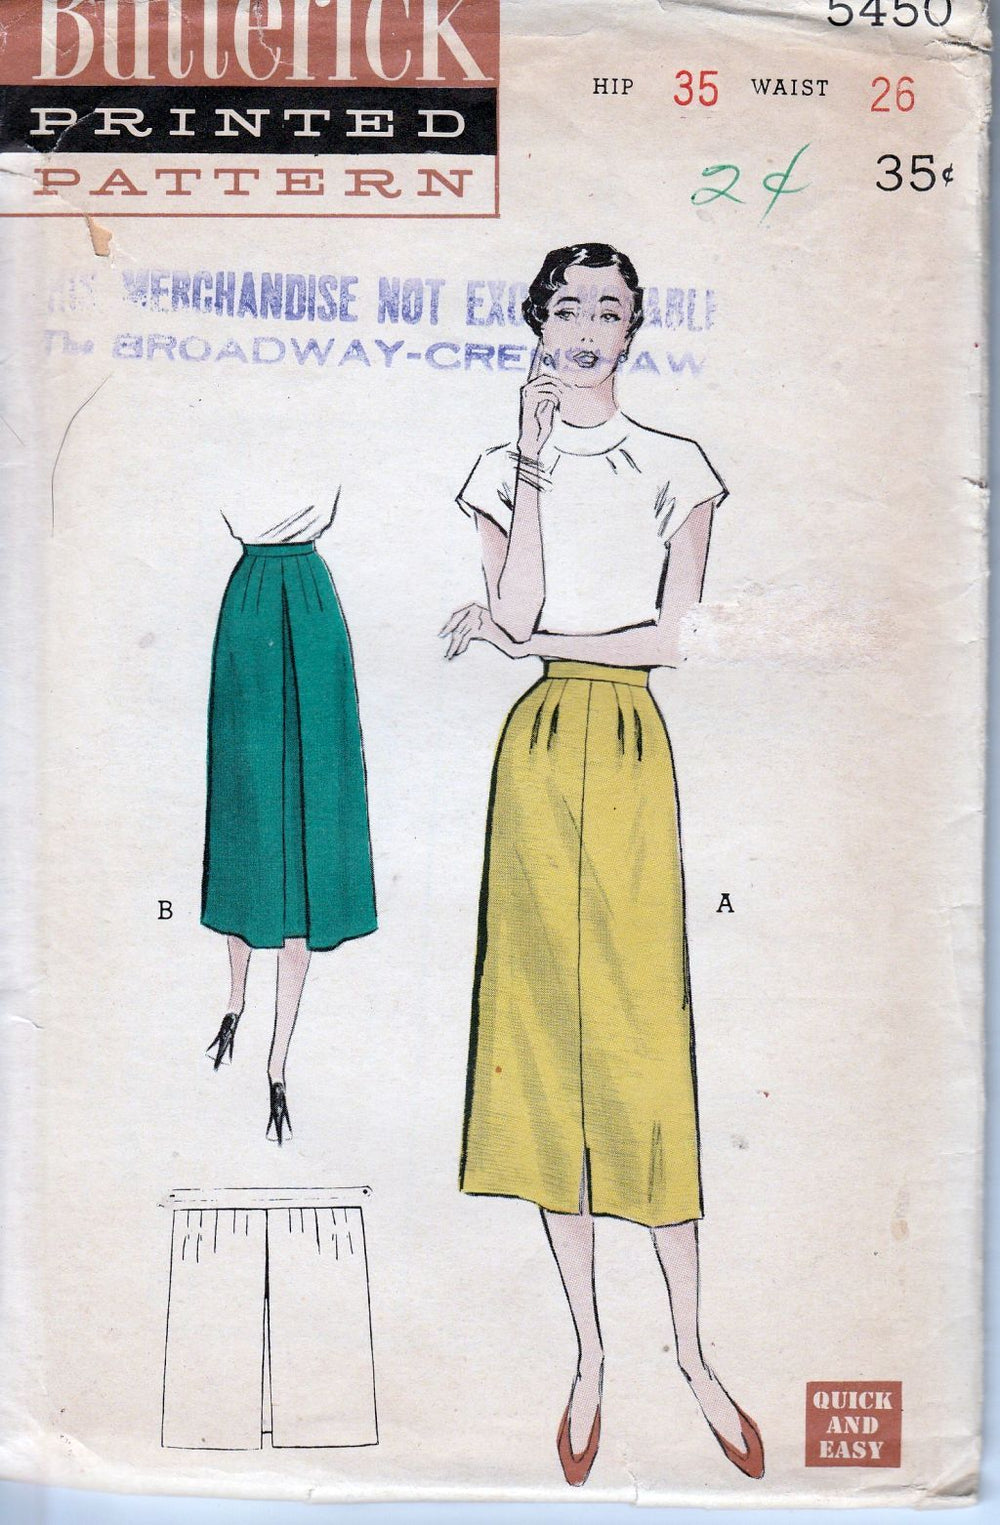 Butterick 5450 Ladies Slim Skirt Vintage Sewing Pattern 1950's - VintageStitching - Vintage Sewing Patterns